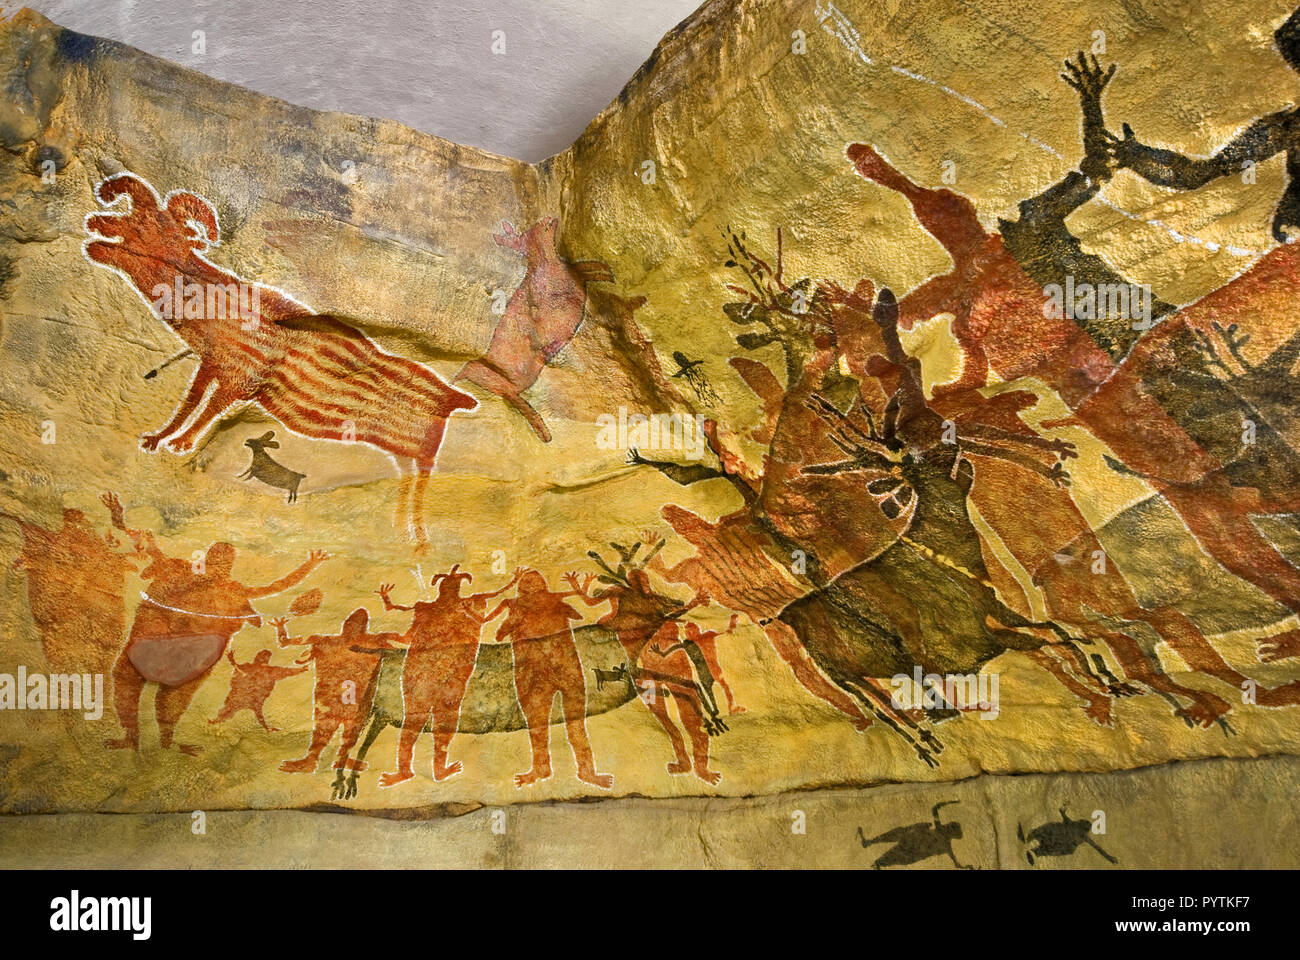 Las réplicas de las pinturas rupestres en el Museo de San Ignacio, Baja California Sur, México Foto de stock